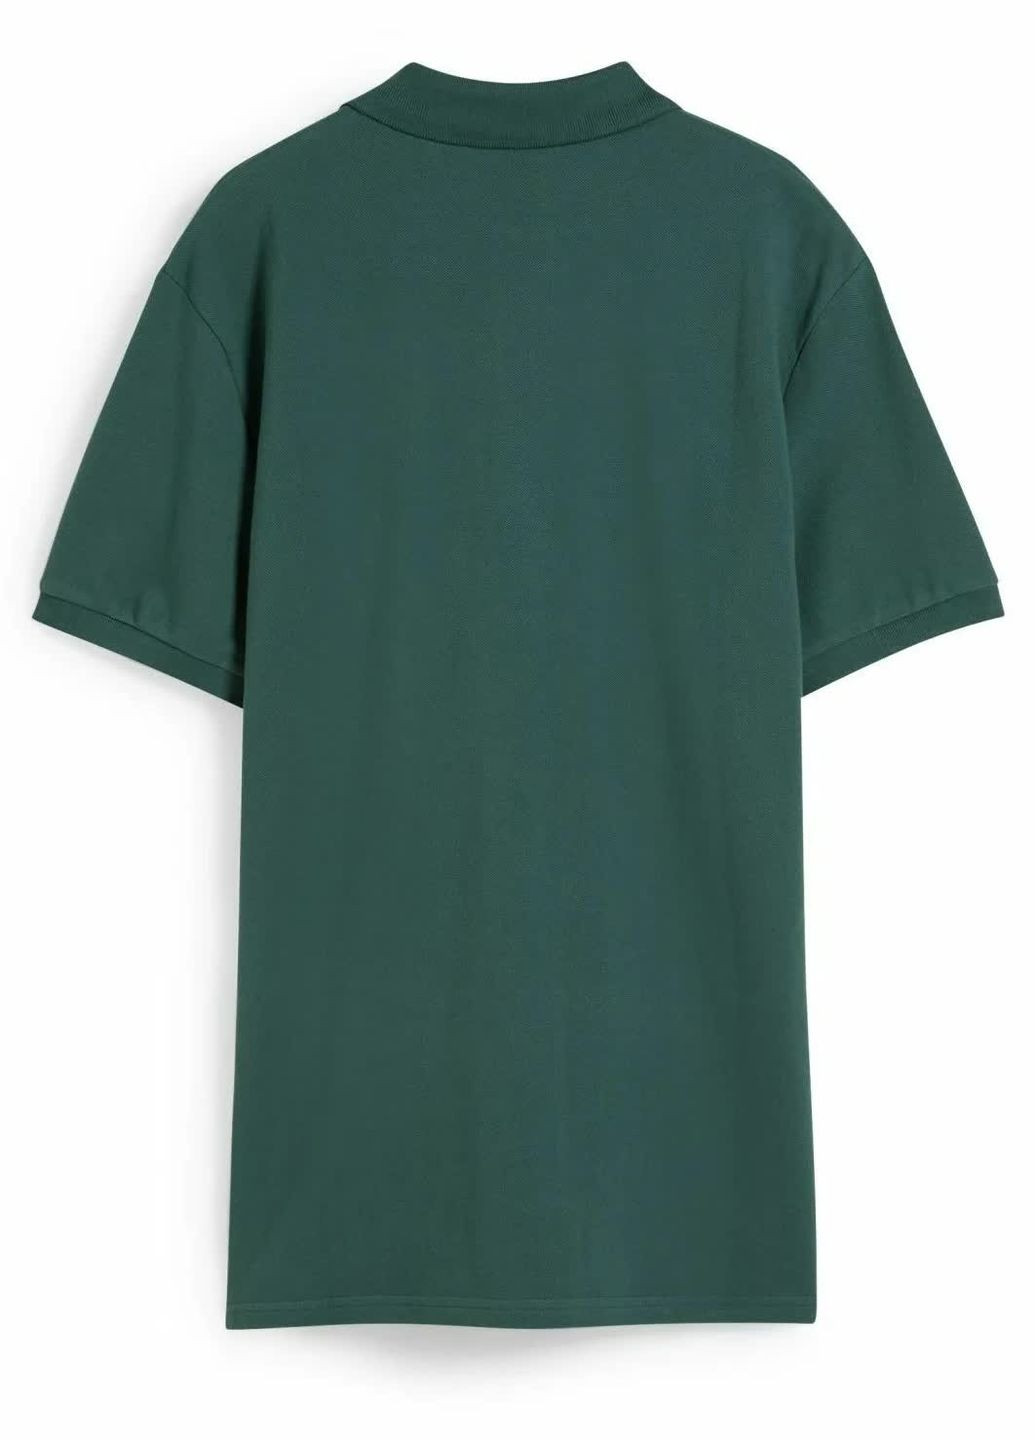 Зеленая футболка-поло из хлопка для мужчин C&A однотонная